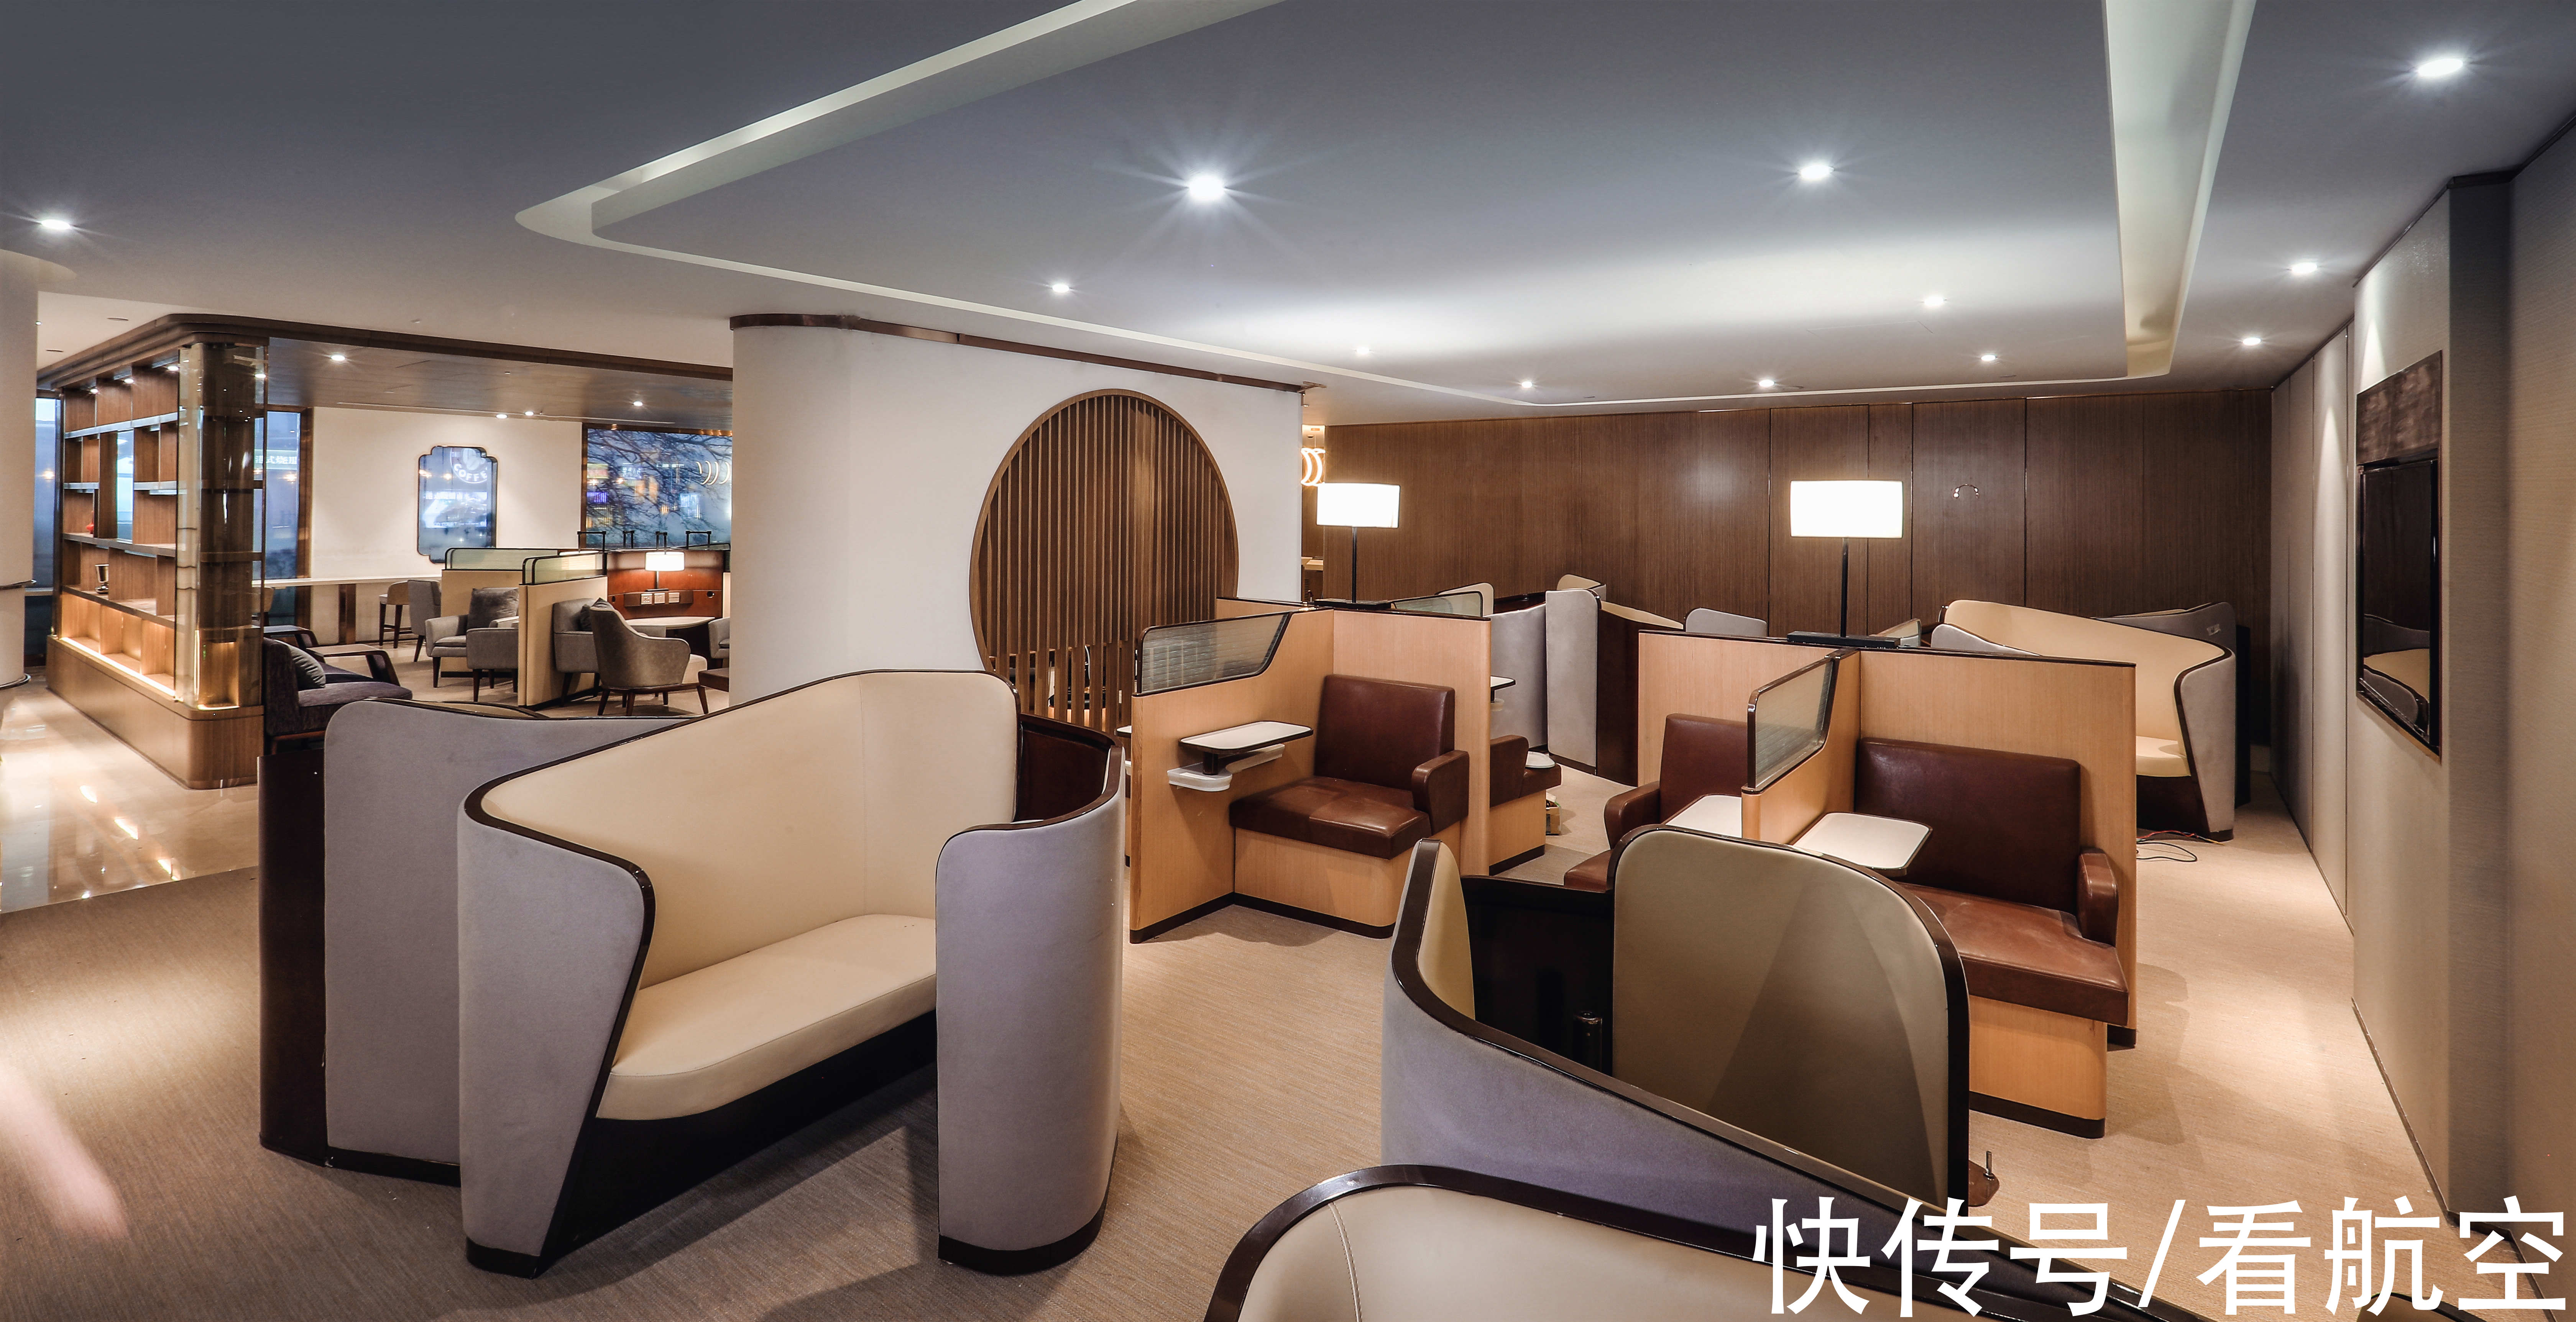 旅客|海南航空贵宾室荣获“2021年度品质休息室”荣誉